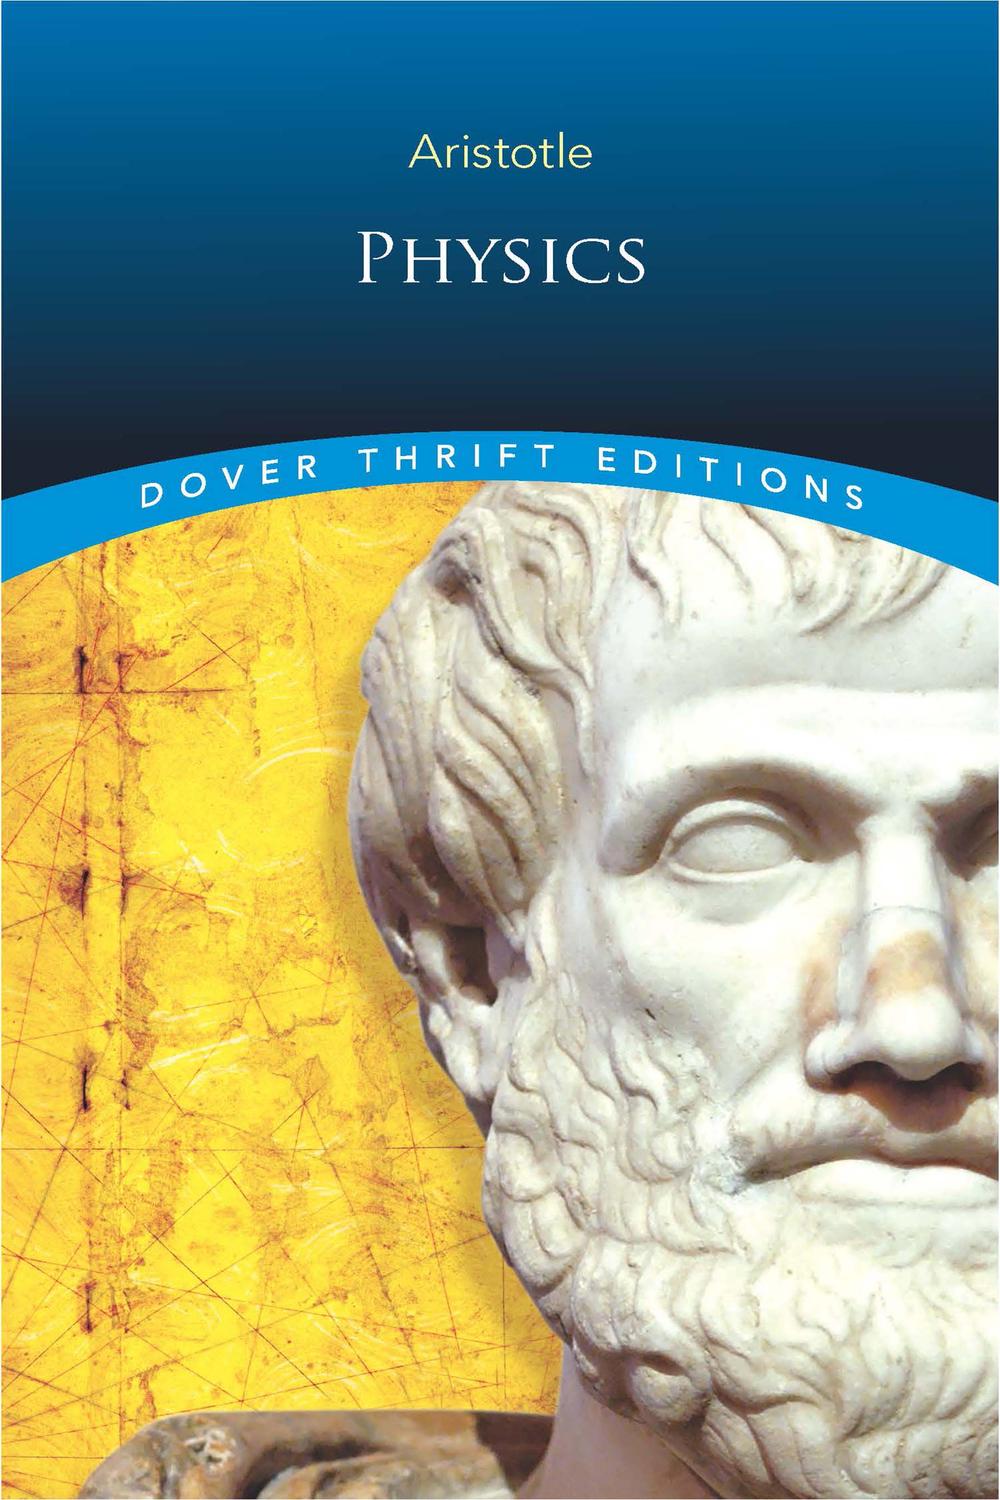 Physics - Aristotle,,